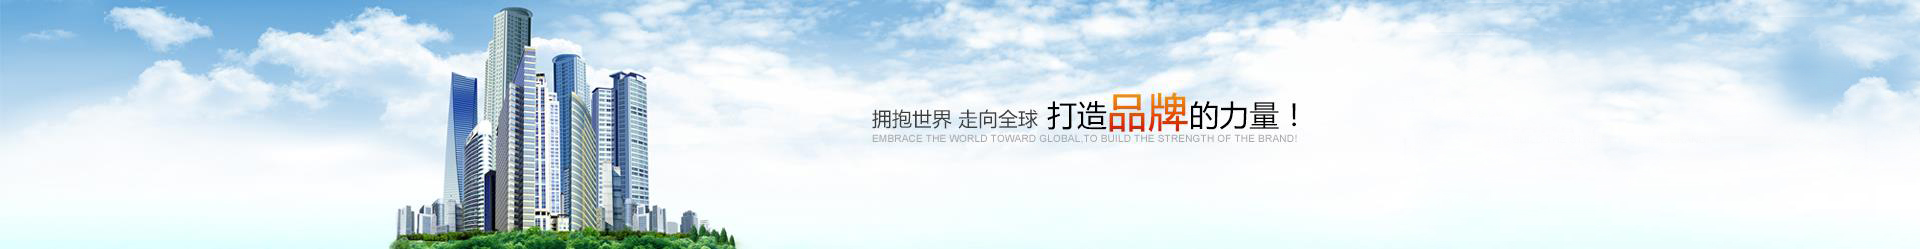 尊龙凯时-人生就是搏!「CHINA」官方网站_image7831